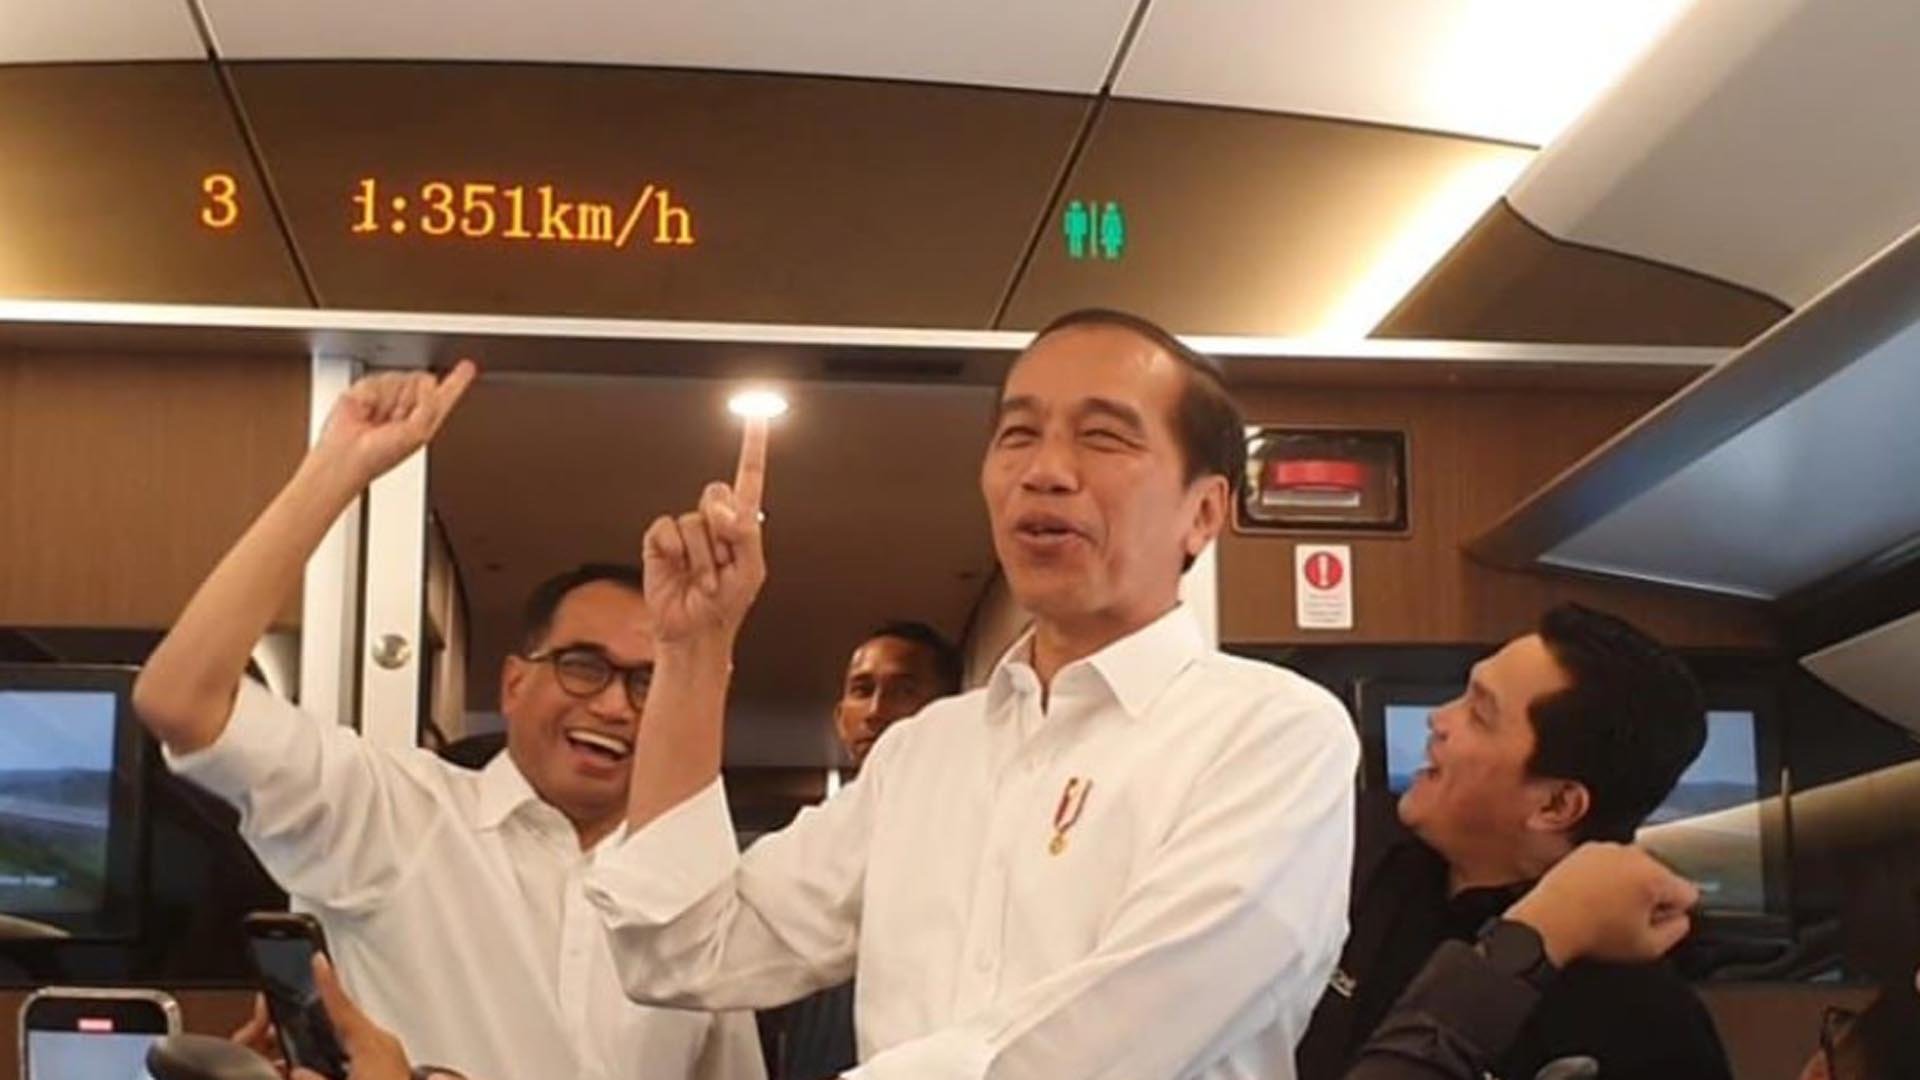 Kereta Cepat Kebanggaan Jokowi Bikin 2 BUMN Rugi Triliunan, Salah Siapa?